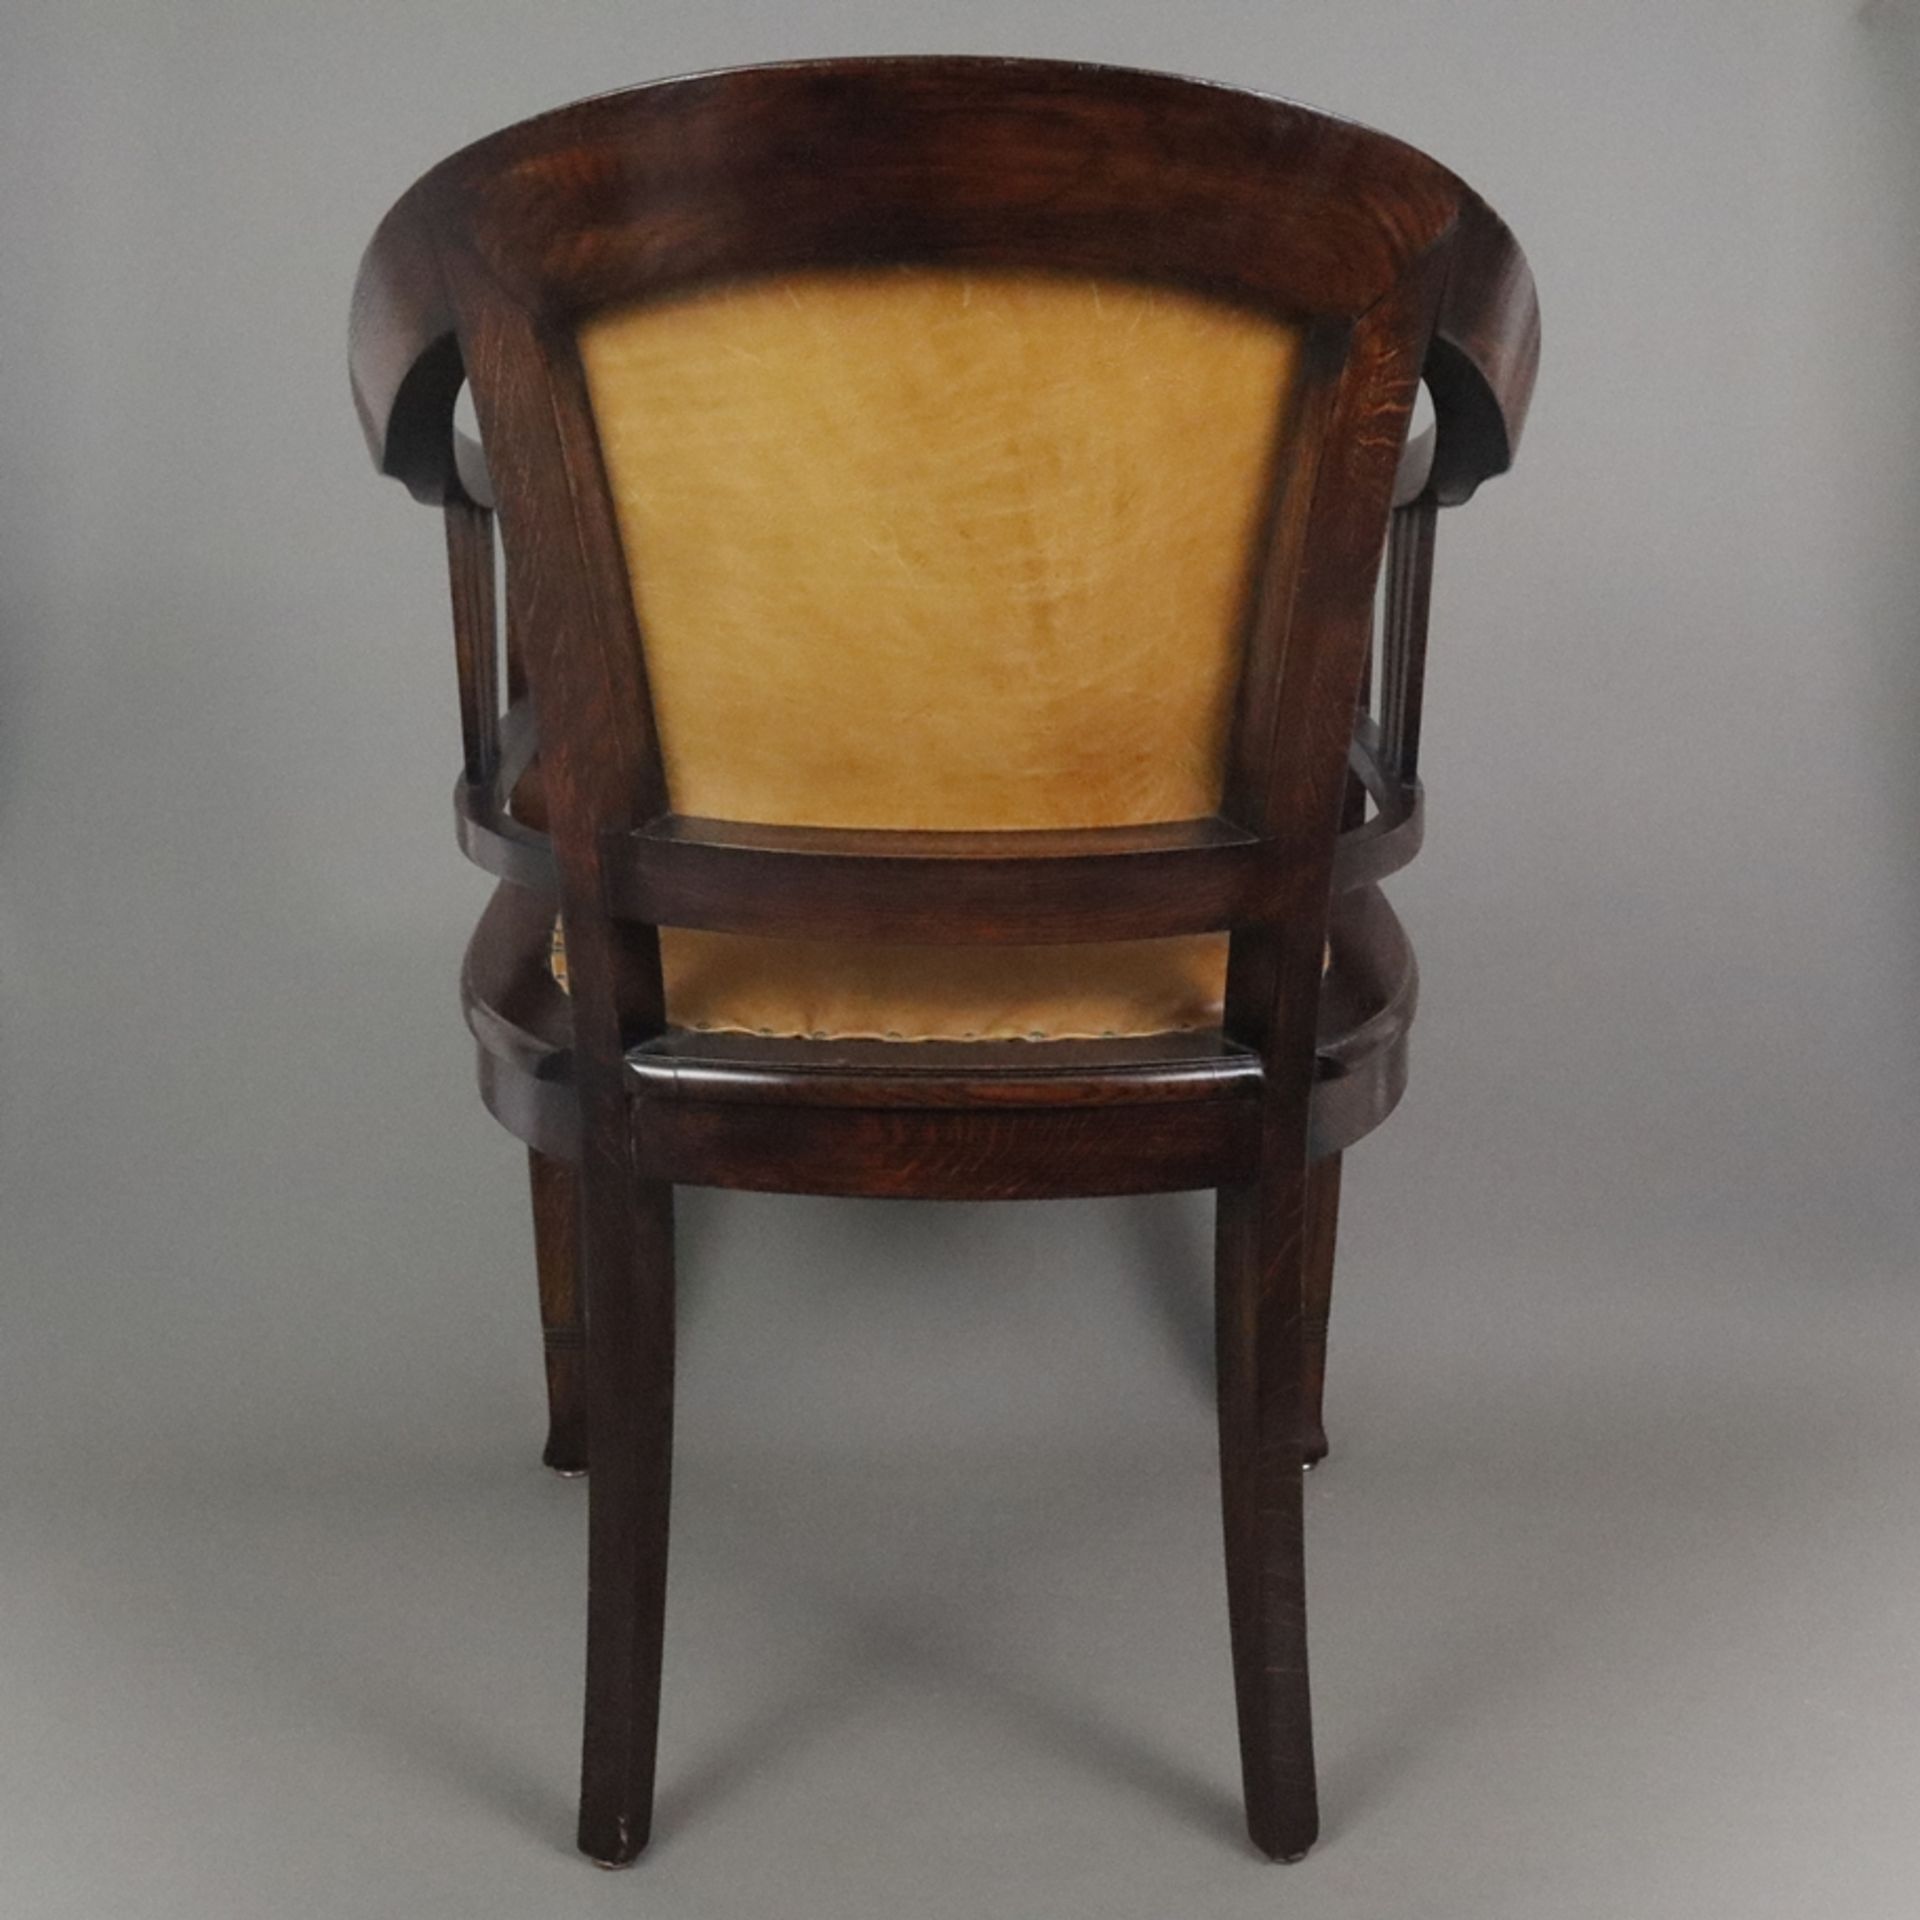 Jugendstil-Armlehnstuhl - um 1910, Holz, dunkel gebeizt, halbrunder Armlehnstuhl mit Vierkantbeinen - Bild 11 aus 12